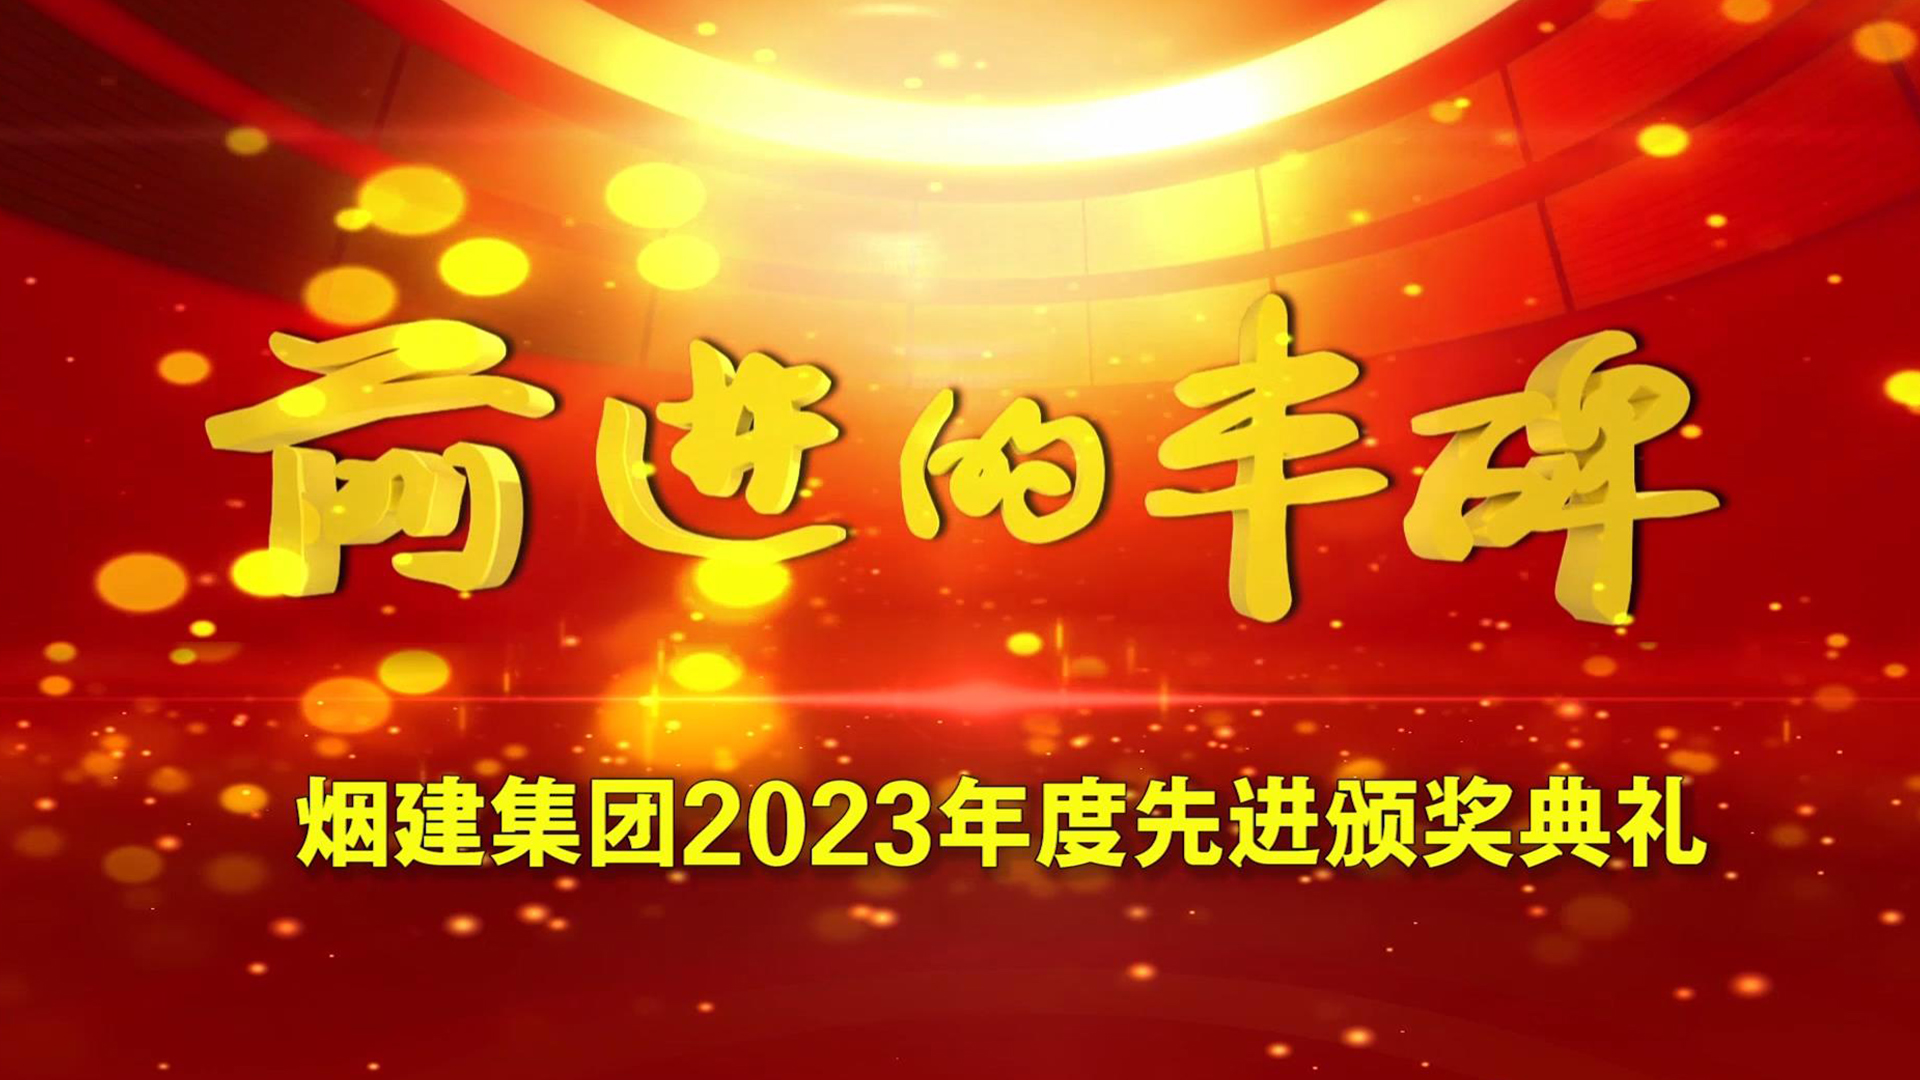 太阳集团电子游戏2023年度先进颁奖典礼